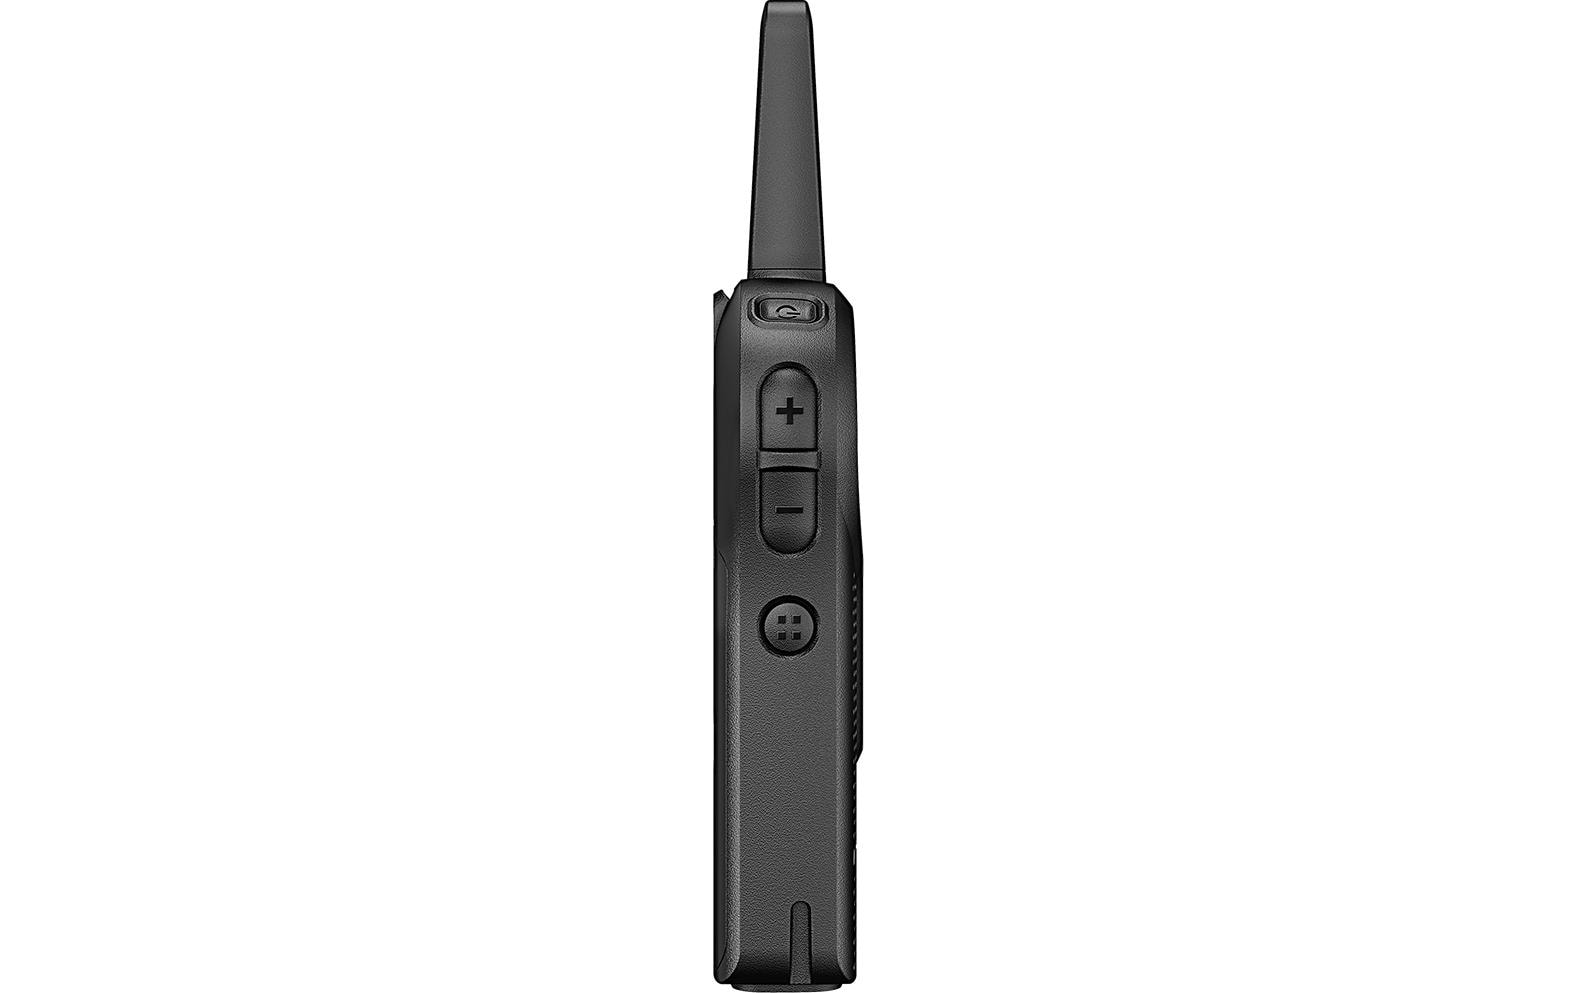 Motorola Funkgerät CLR446